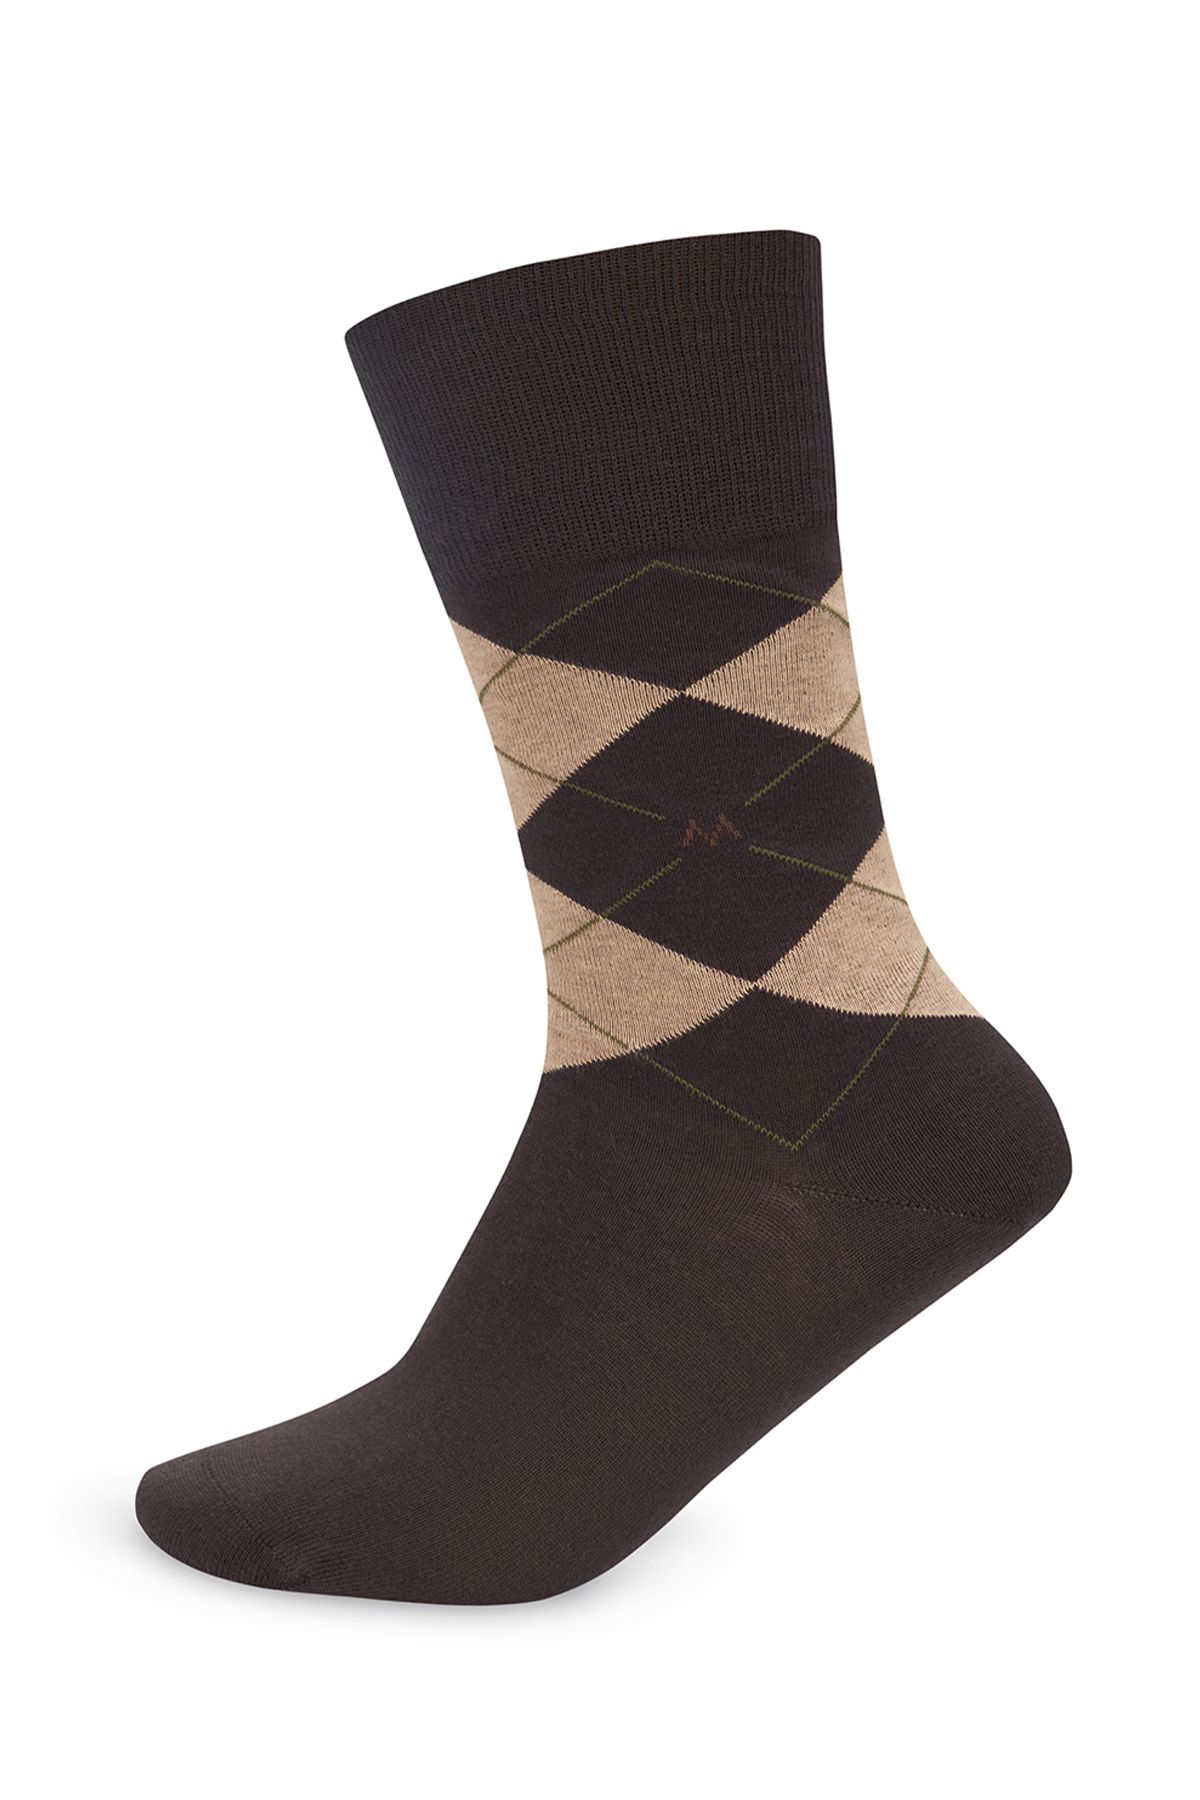 Hemington Baklava Desenli Koyu Kahverengi Pamuk Çorap